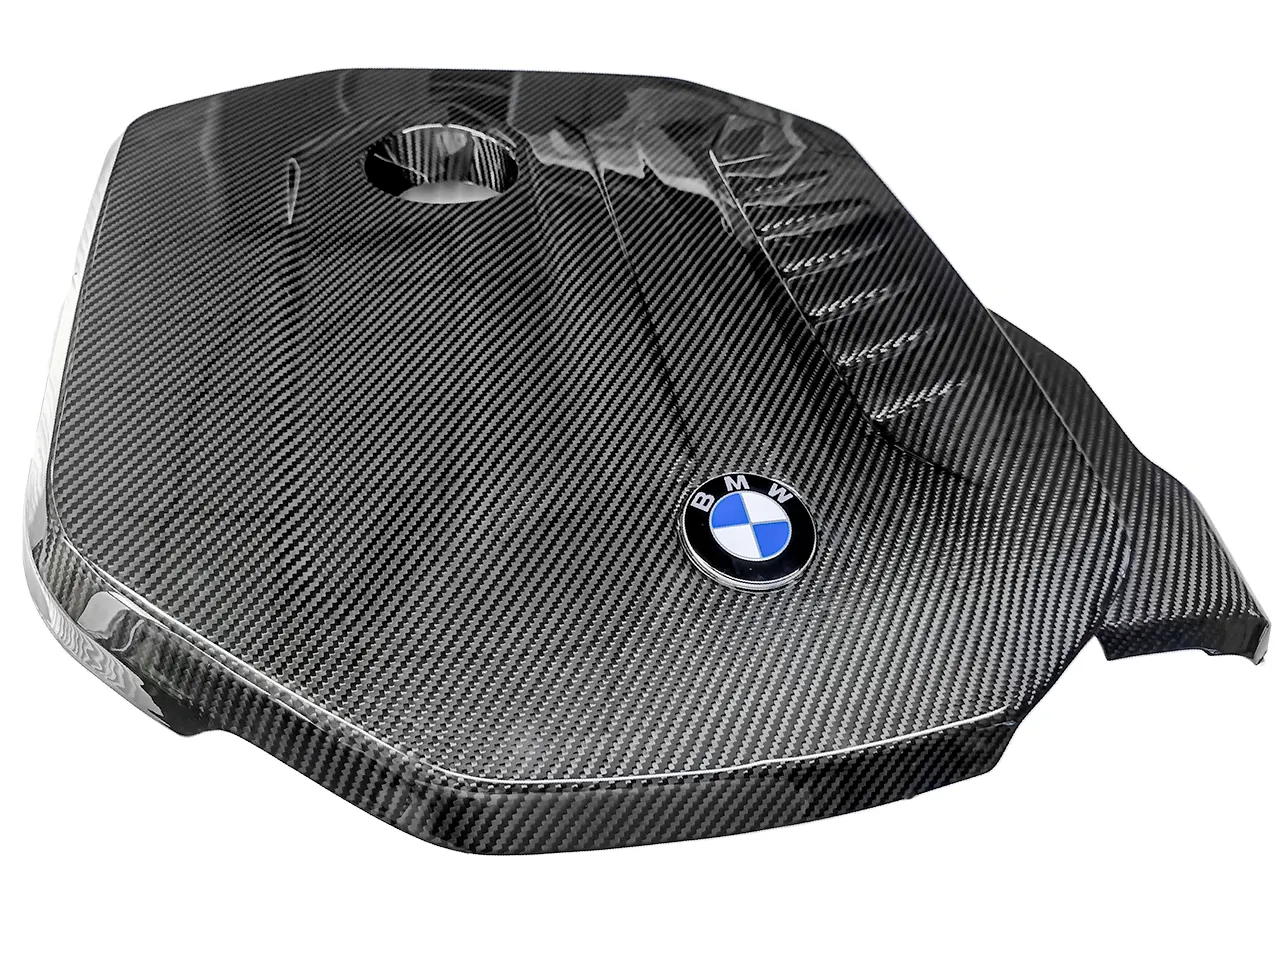 Eventuri Carbon Motorabdeckung für BMW (F-Serie) B58 Motor